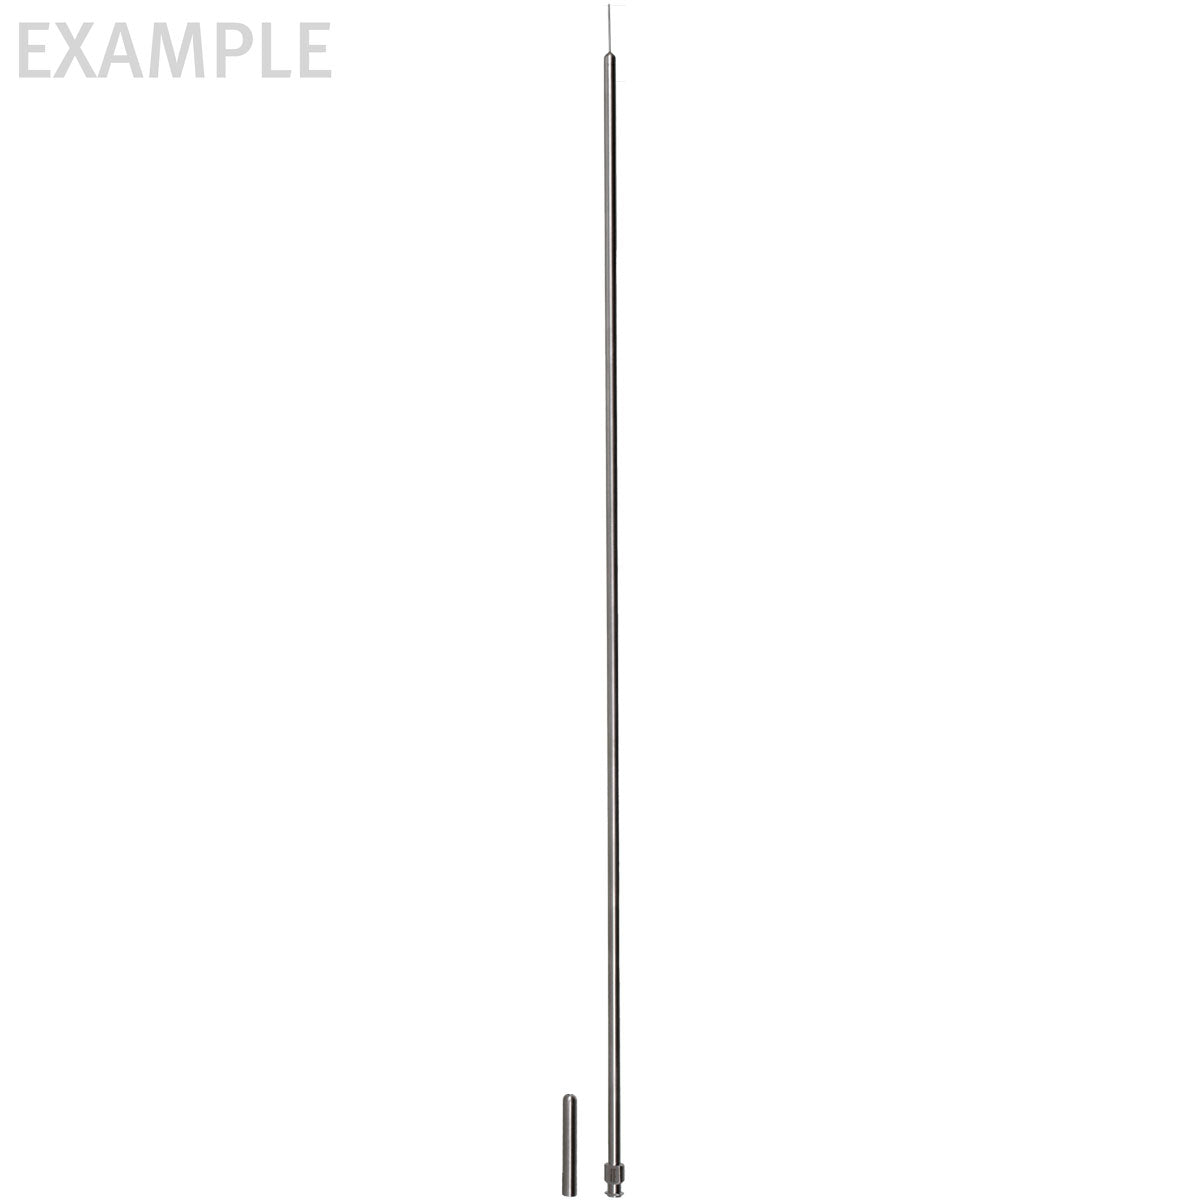 22g, 35cm Irrigating/Aspiration Needle